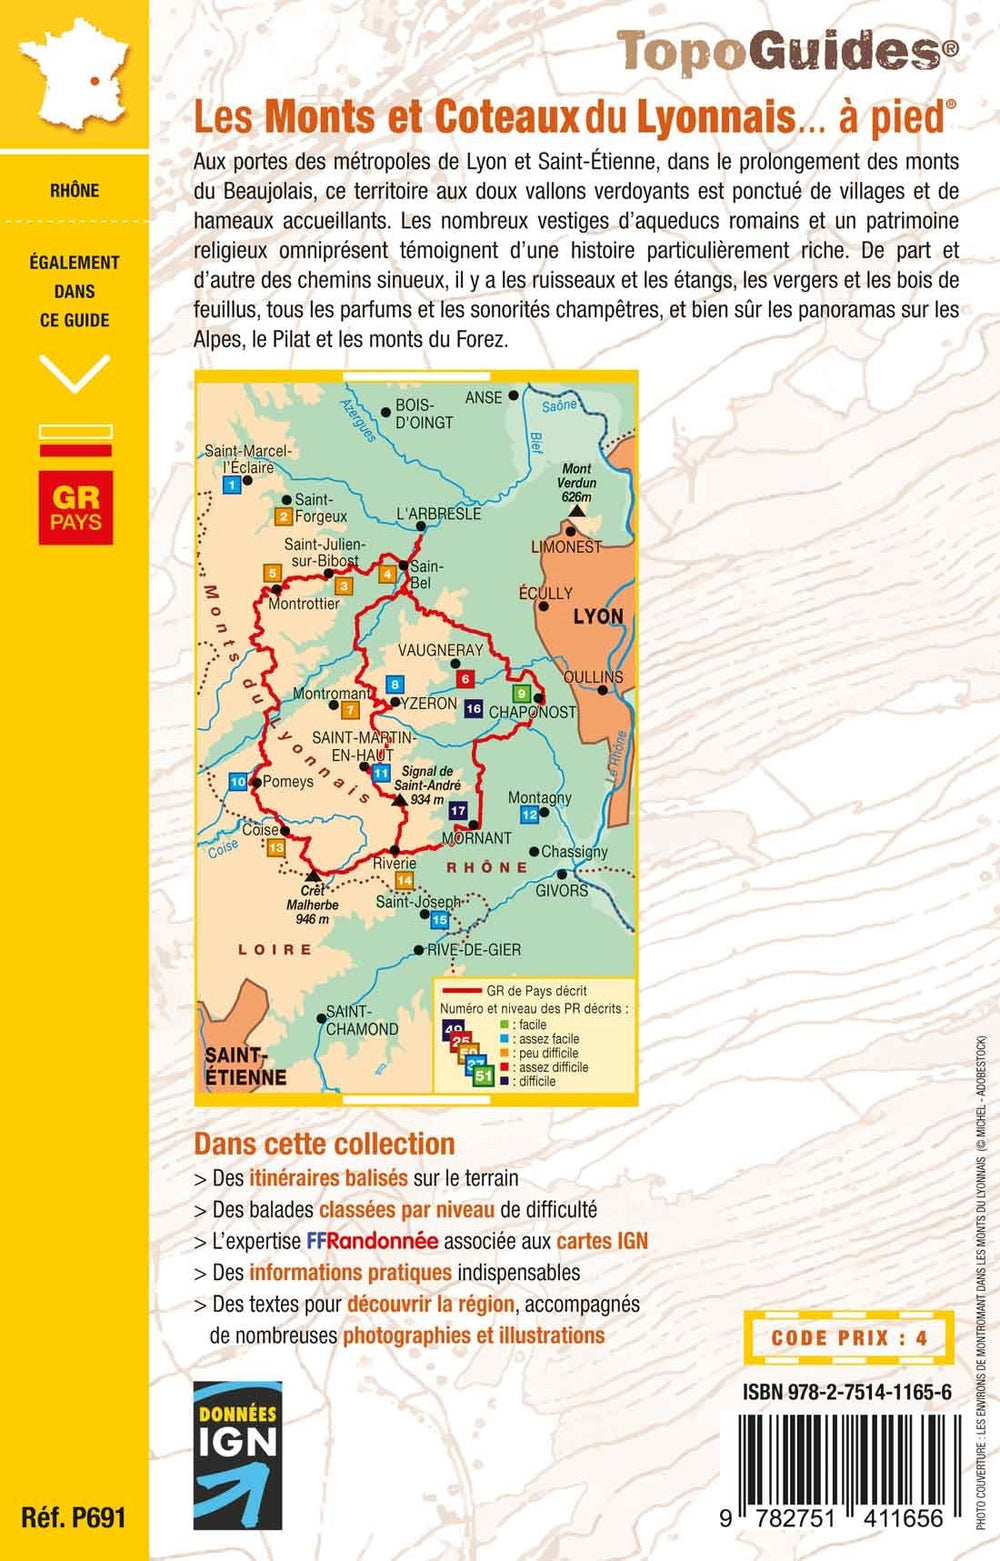 Topoguide de randonnée - Les Monts et Coteaux du Lyonnais à pied | FFR guide de randonnée FFR - Fédération Française de Randonnée 